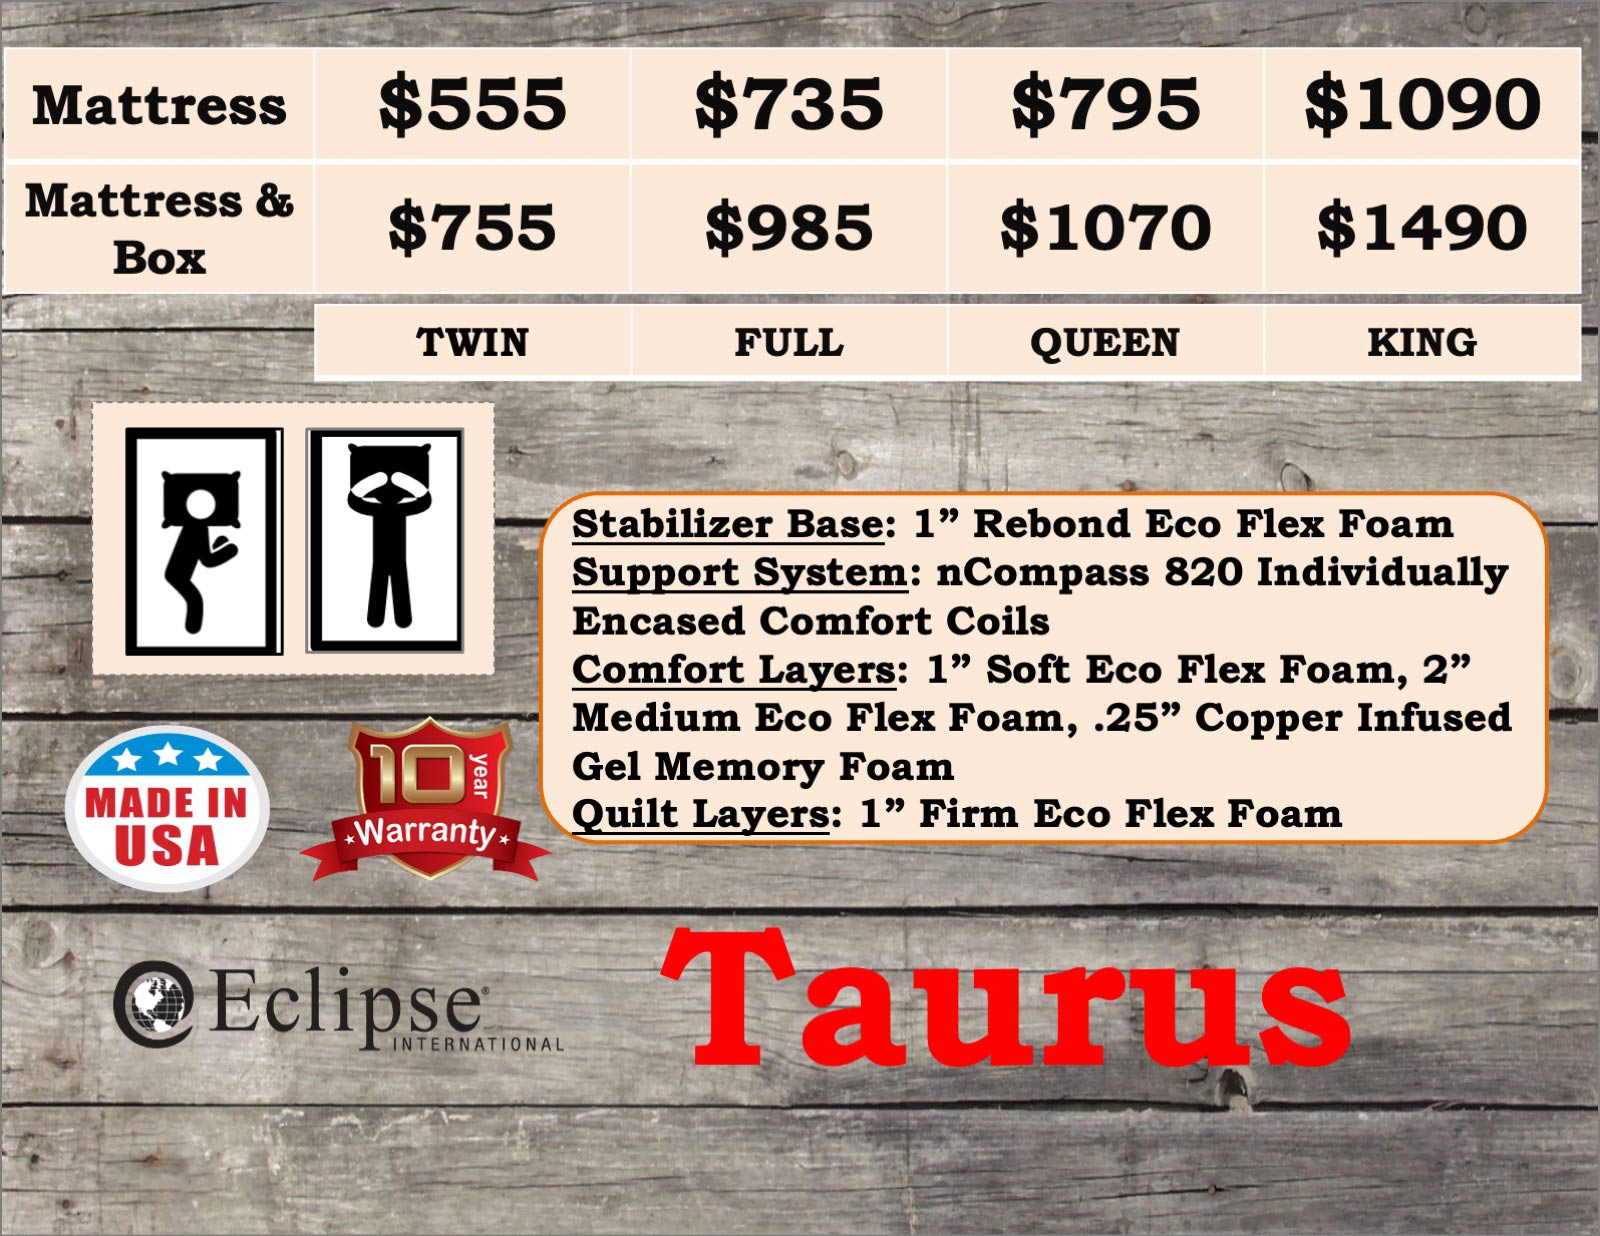 mattresses-eclipseinternational-taurus